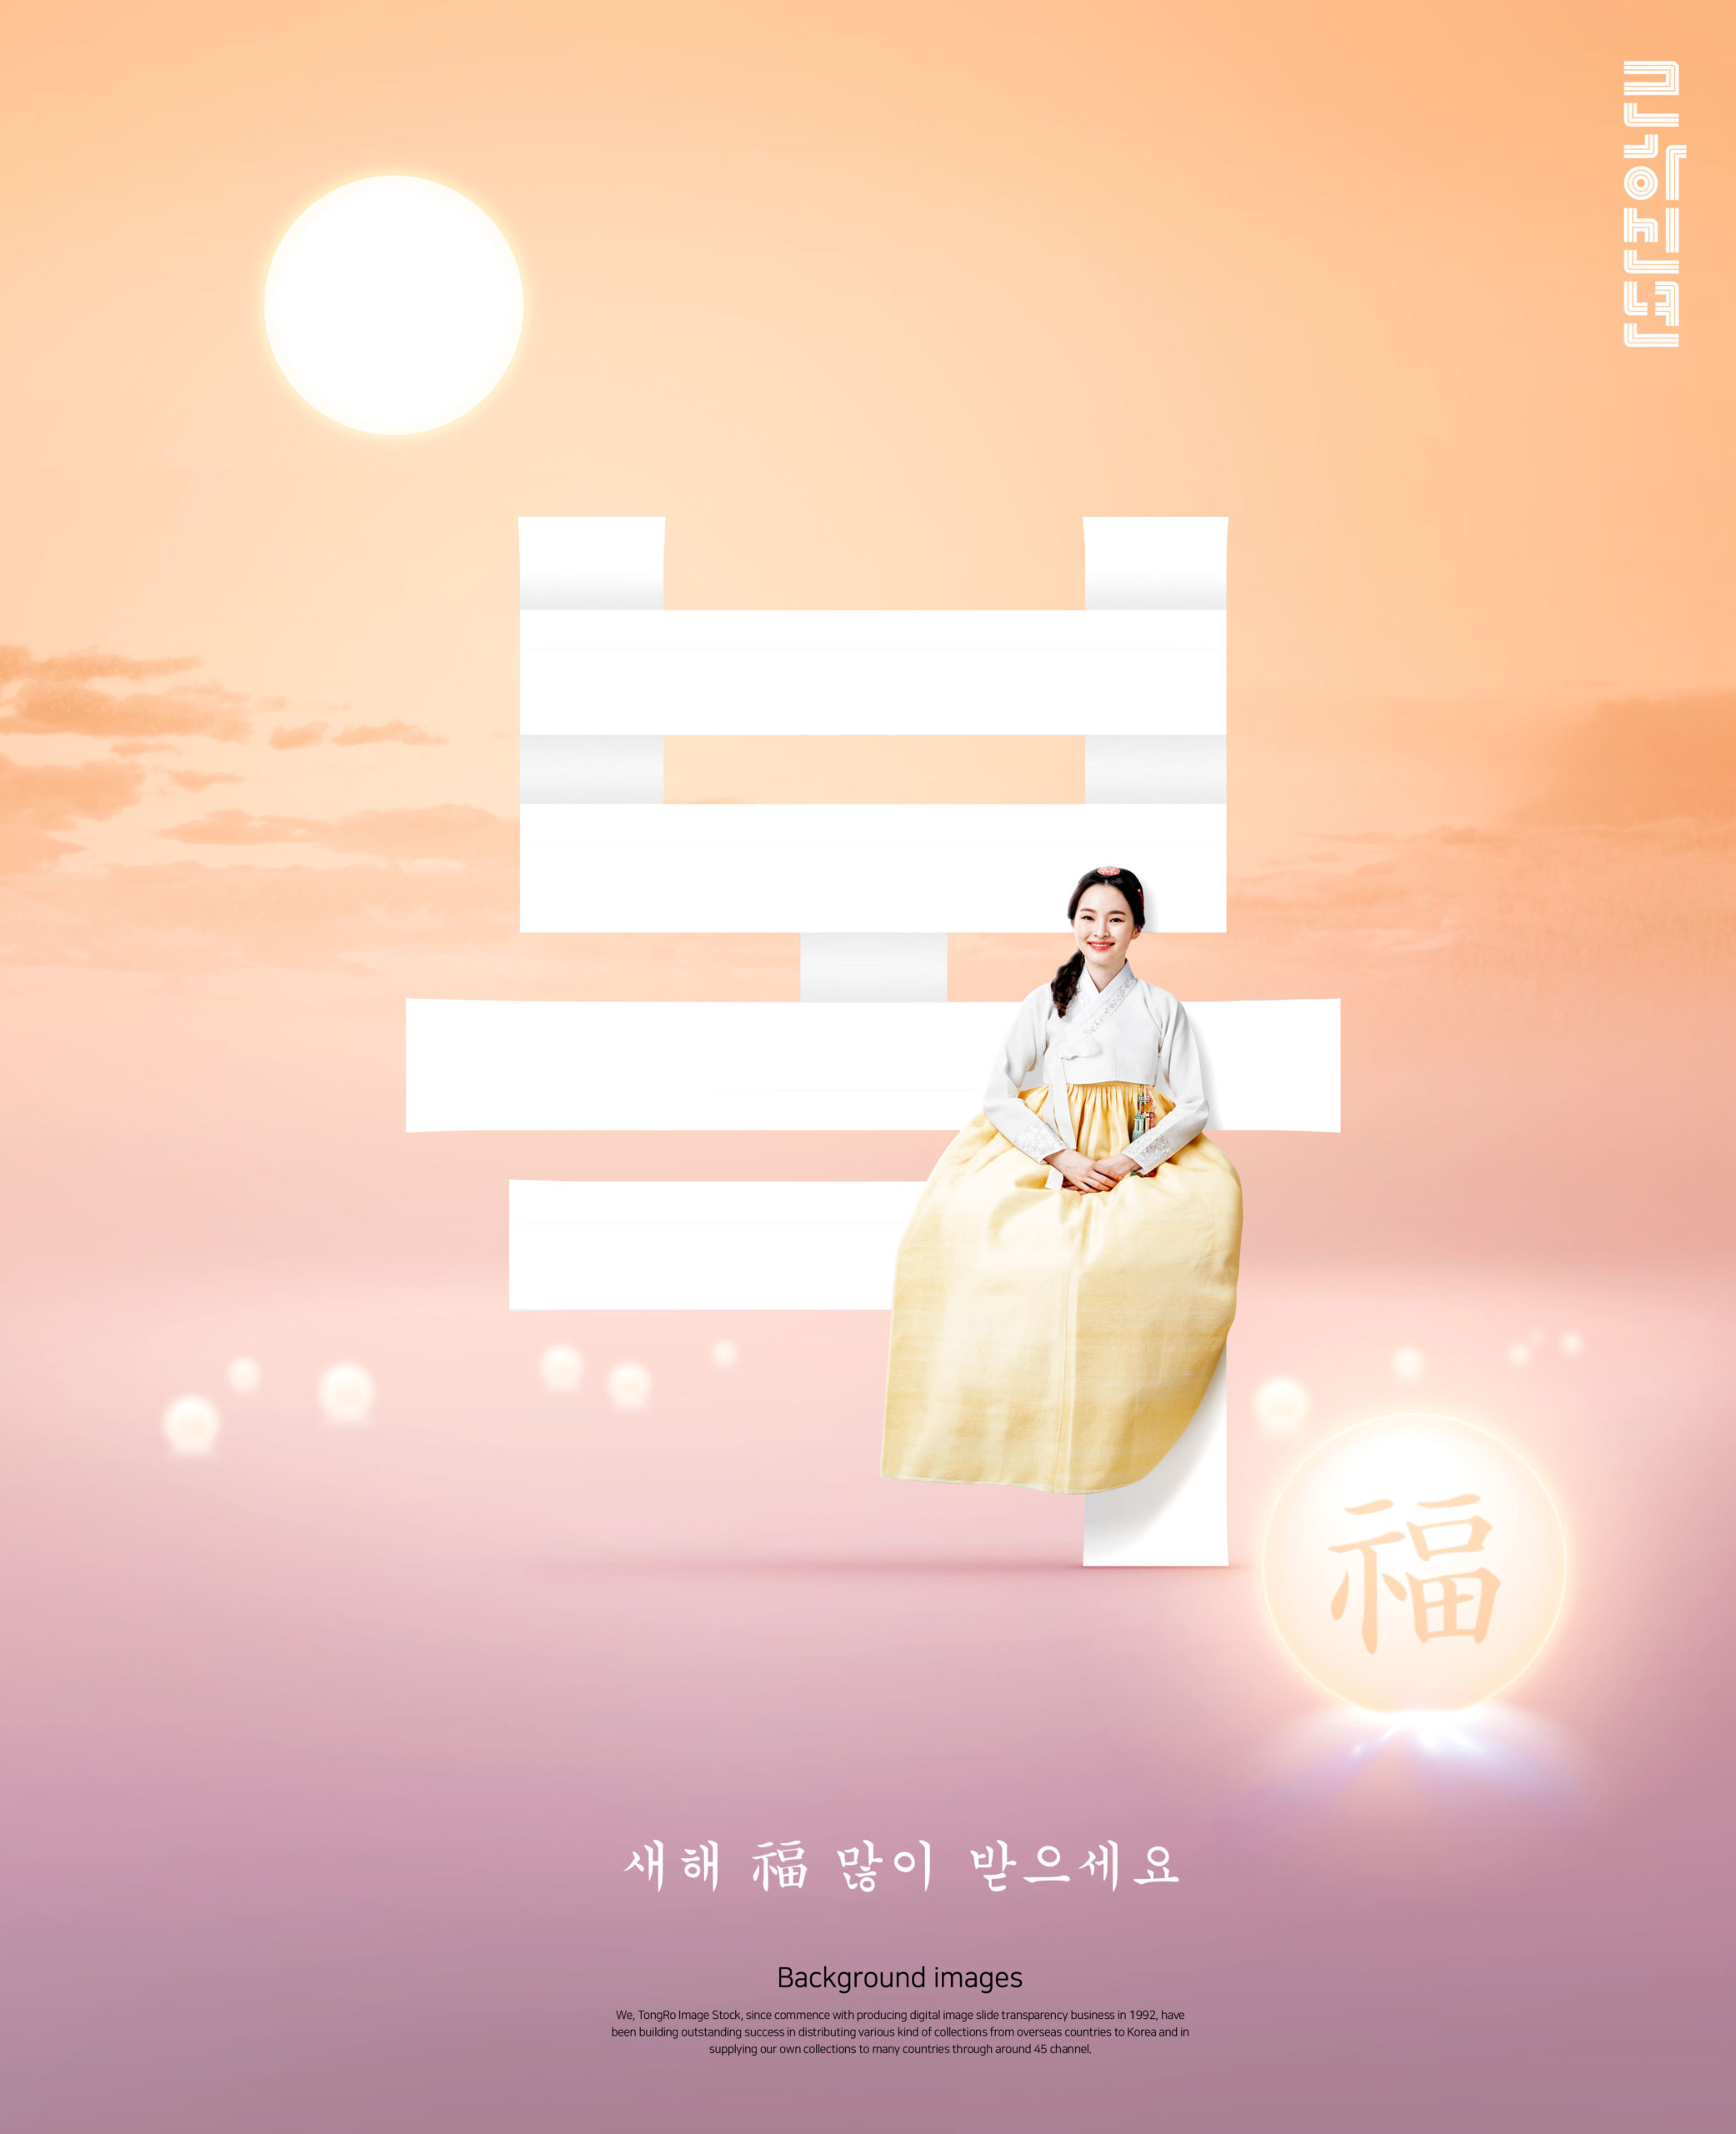 韩国元素风格”福到/月圆”新年主题海报模板套装[PSD]插图